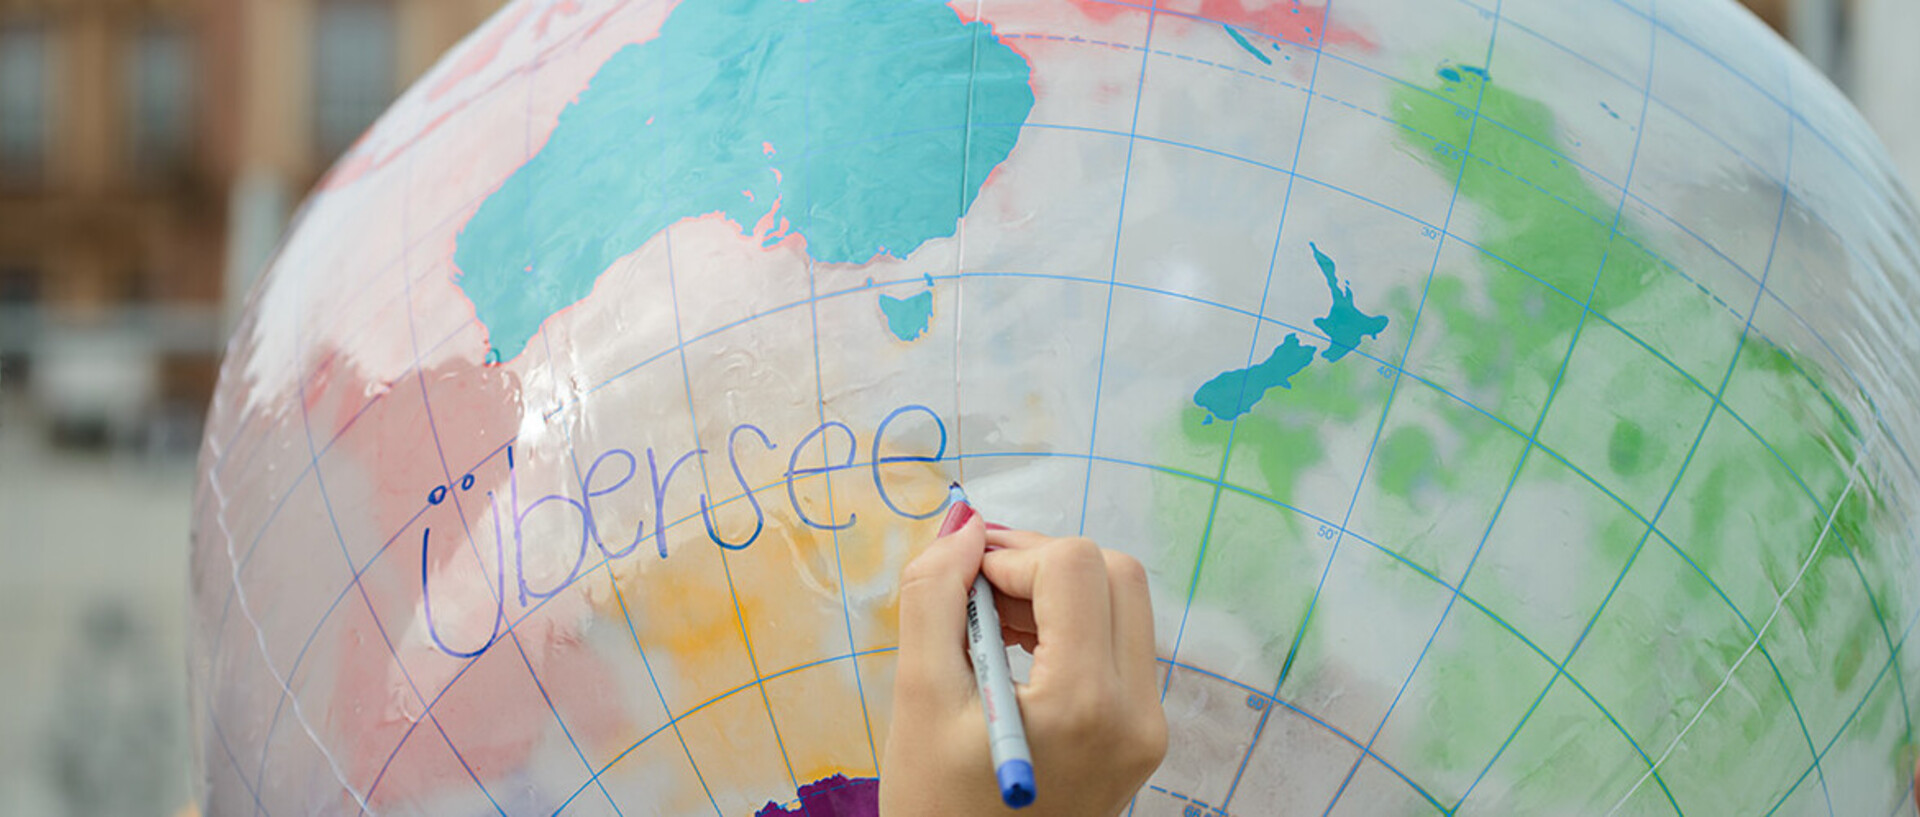 Eine Hand schreibt das Wort "Übersee" auf einen aufgeblasenen Globus